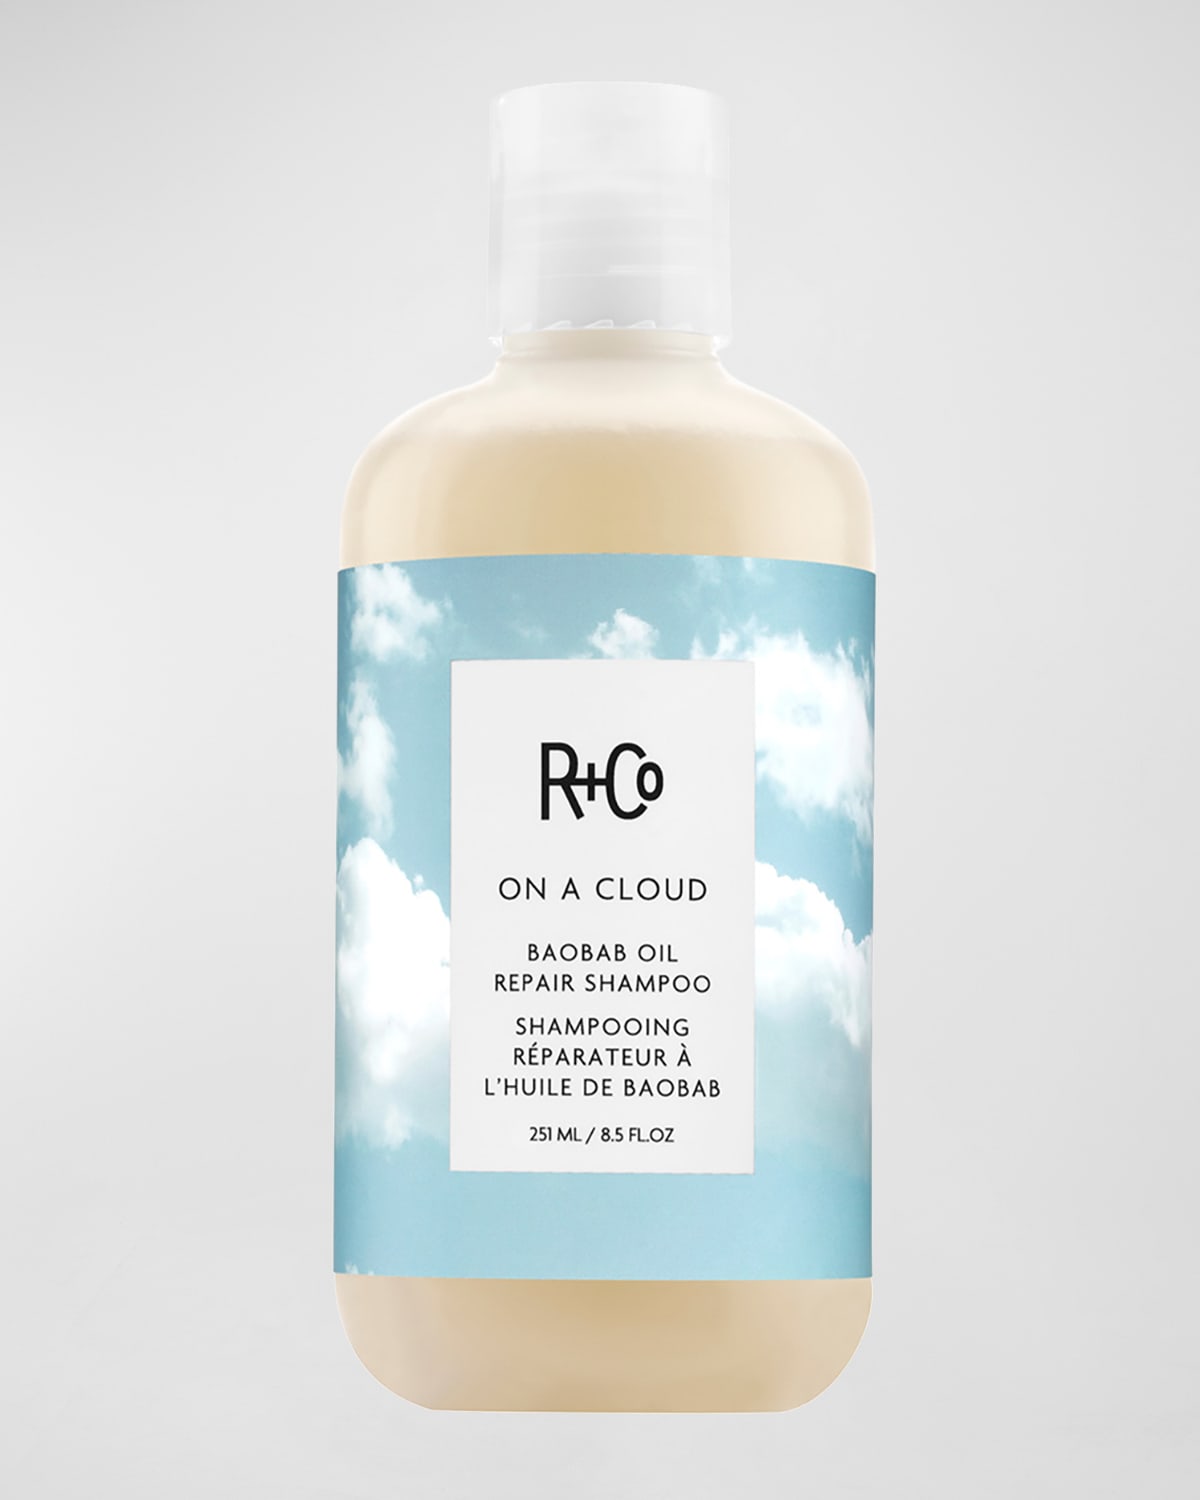 On a Cloud Baobab Oil Repair Shampoo